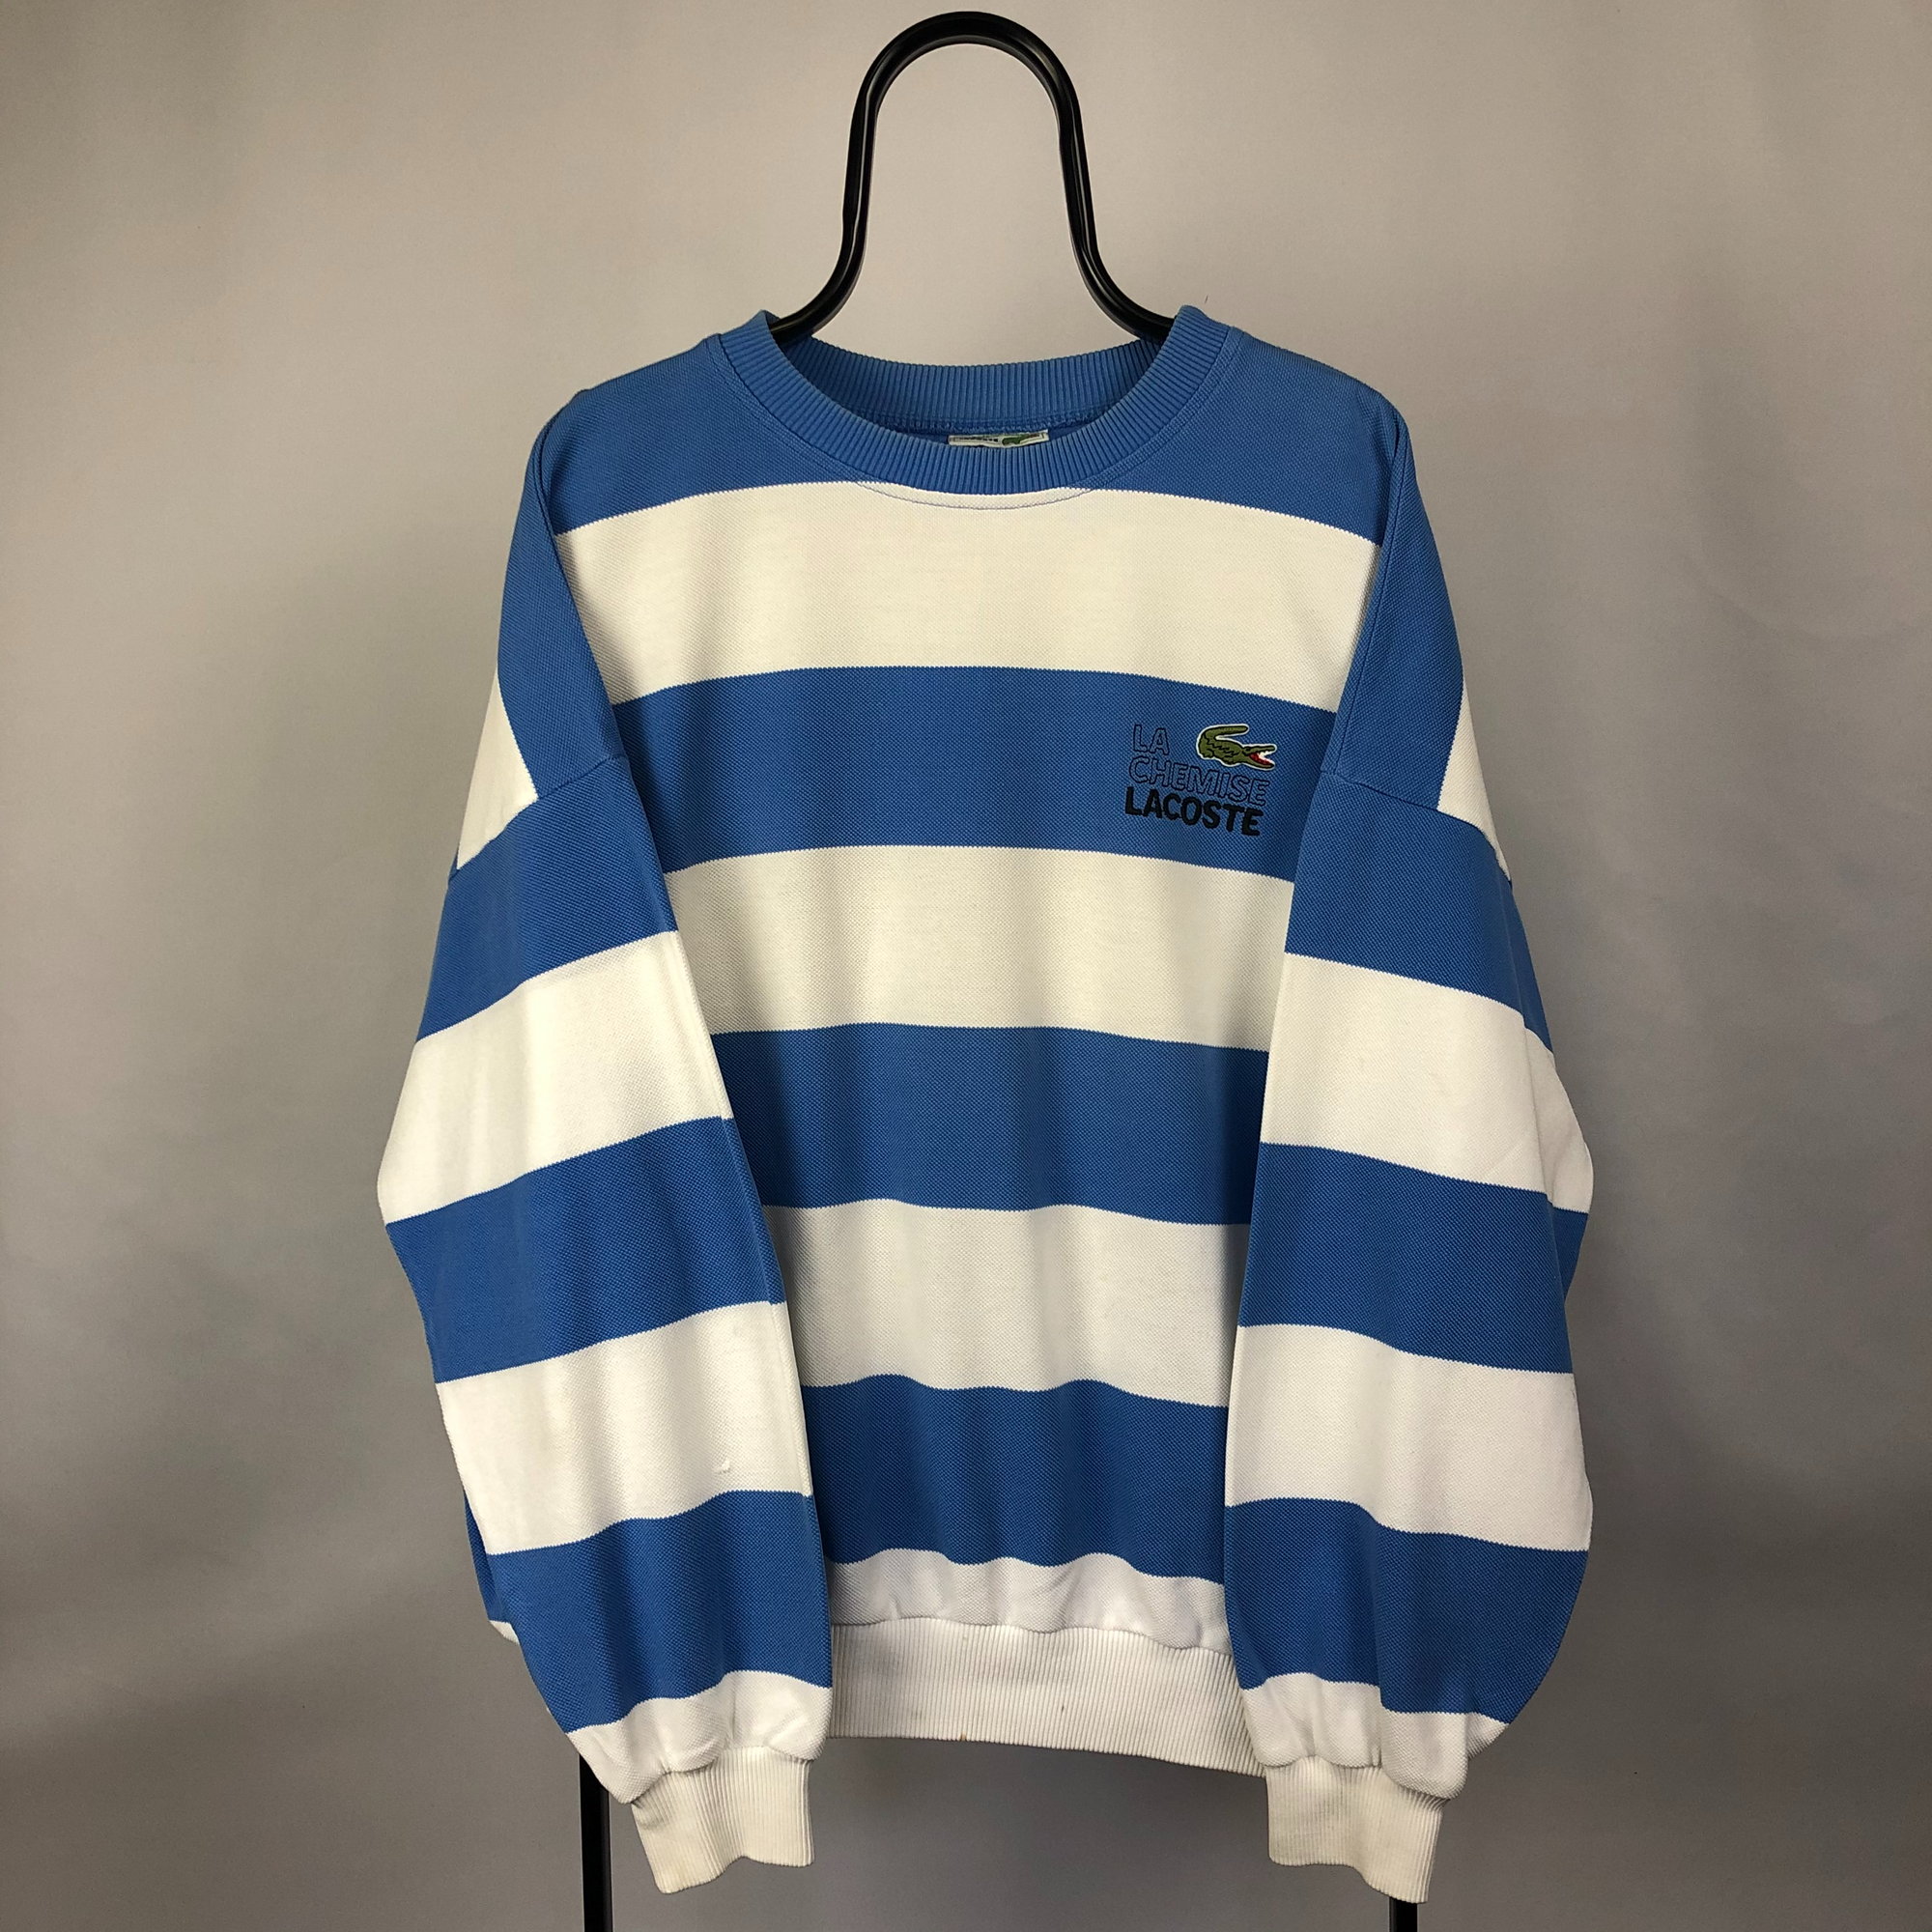 Lacoste Striped Sweatshirt in Blue/White - Men's Large/Women's XL